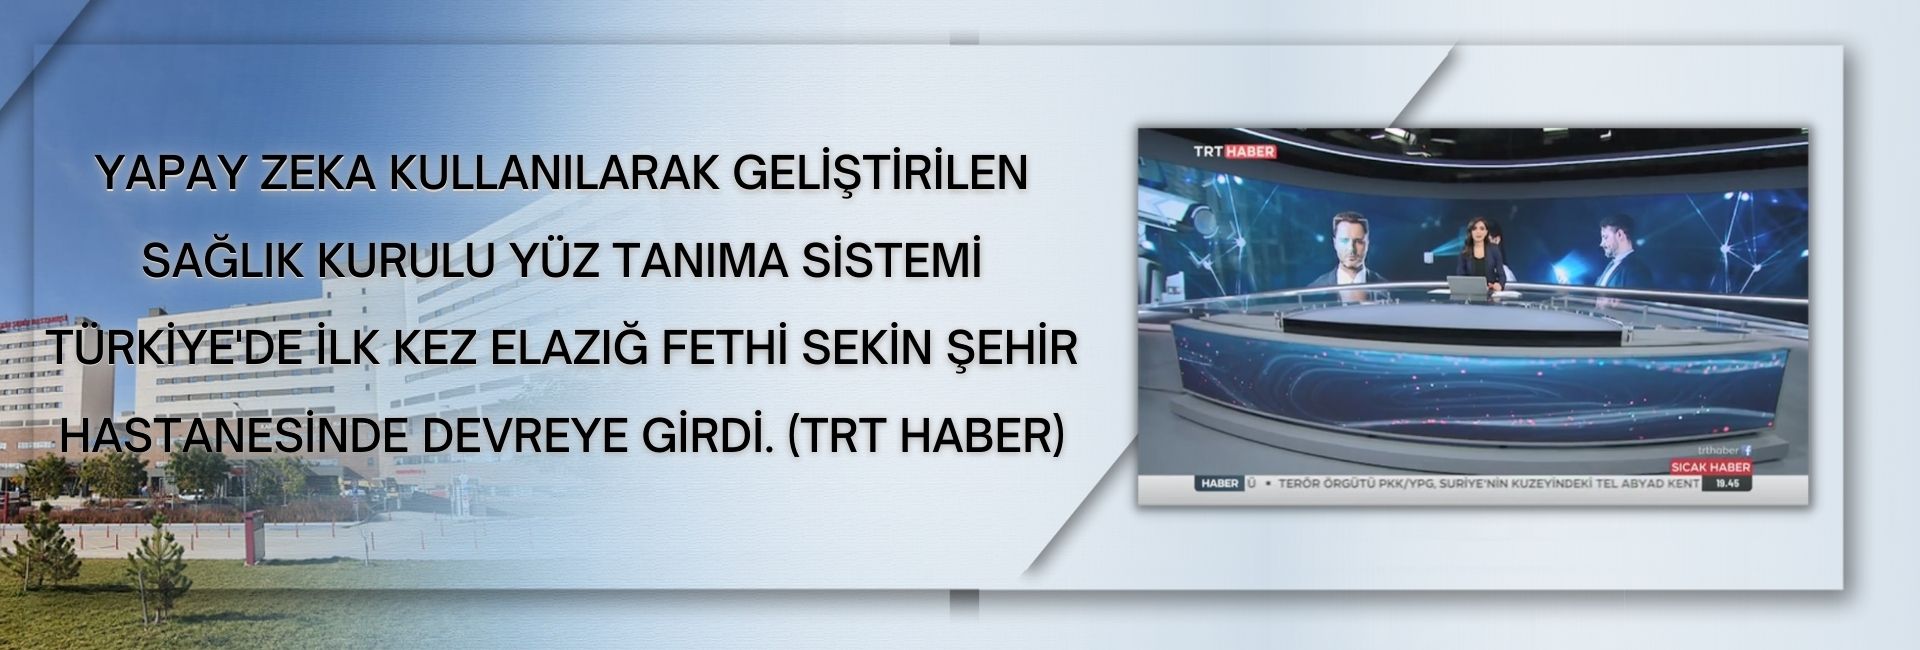 Yapay Zeka Kullanılarak Geliştirilen Sağlık Kurulu Yüz Tanıma Sistemi Türkiye'de İlk Kez Elazığ Fethi Sekin Şehir Hastanesinde Devreye Girdi. (TRT Haber)